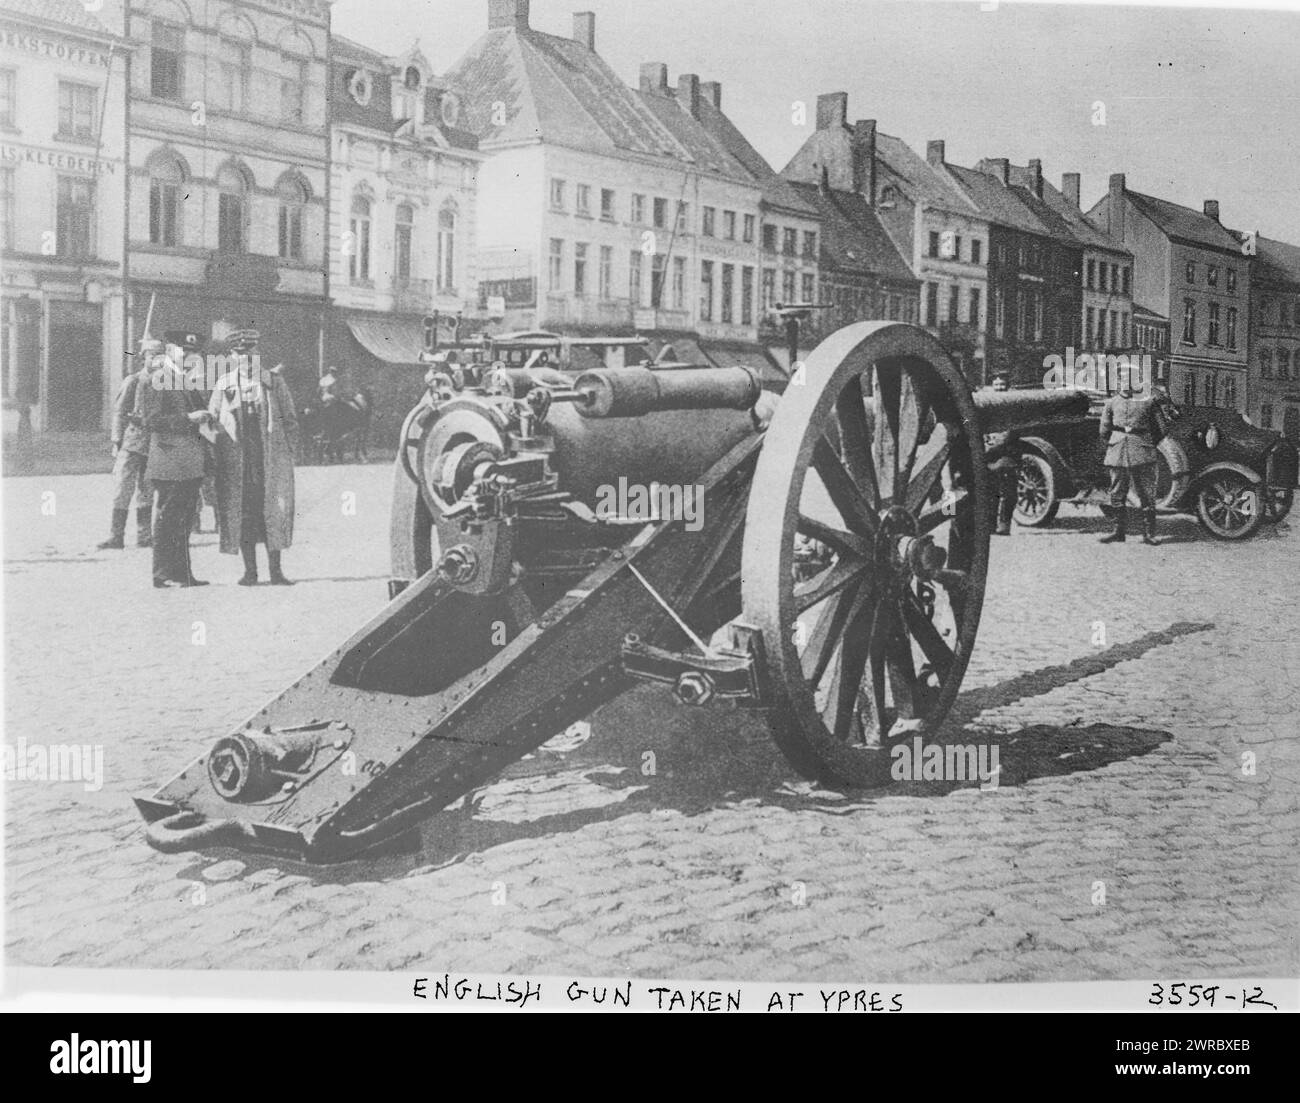 Arme anglaise prise à Ypres, la photographie montre un canon d'artillerie anglais pris pendant la première Guerre mondiale à Ypres, en Belgique., entre 1914 et CA. 1915, Guerre mondiale, 1914-1918, négatifs en verre, 1 négatif : verre Banque D'Images